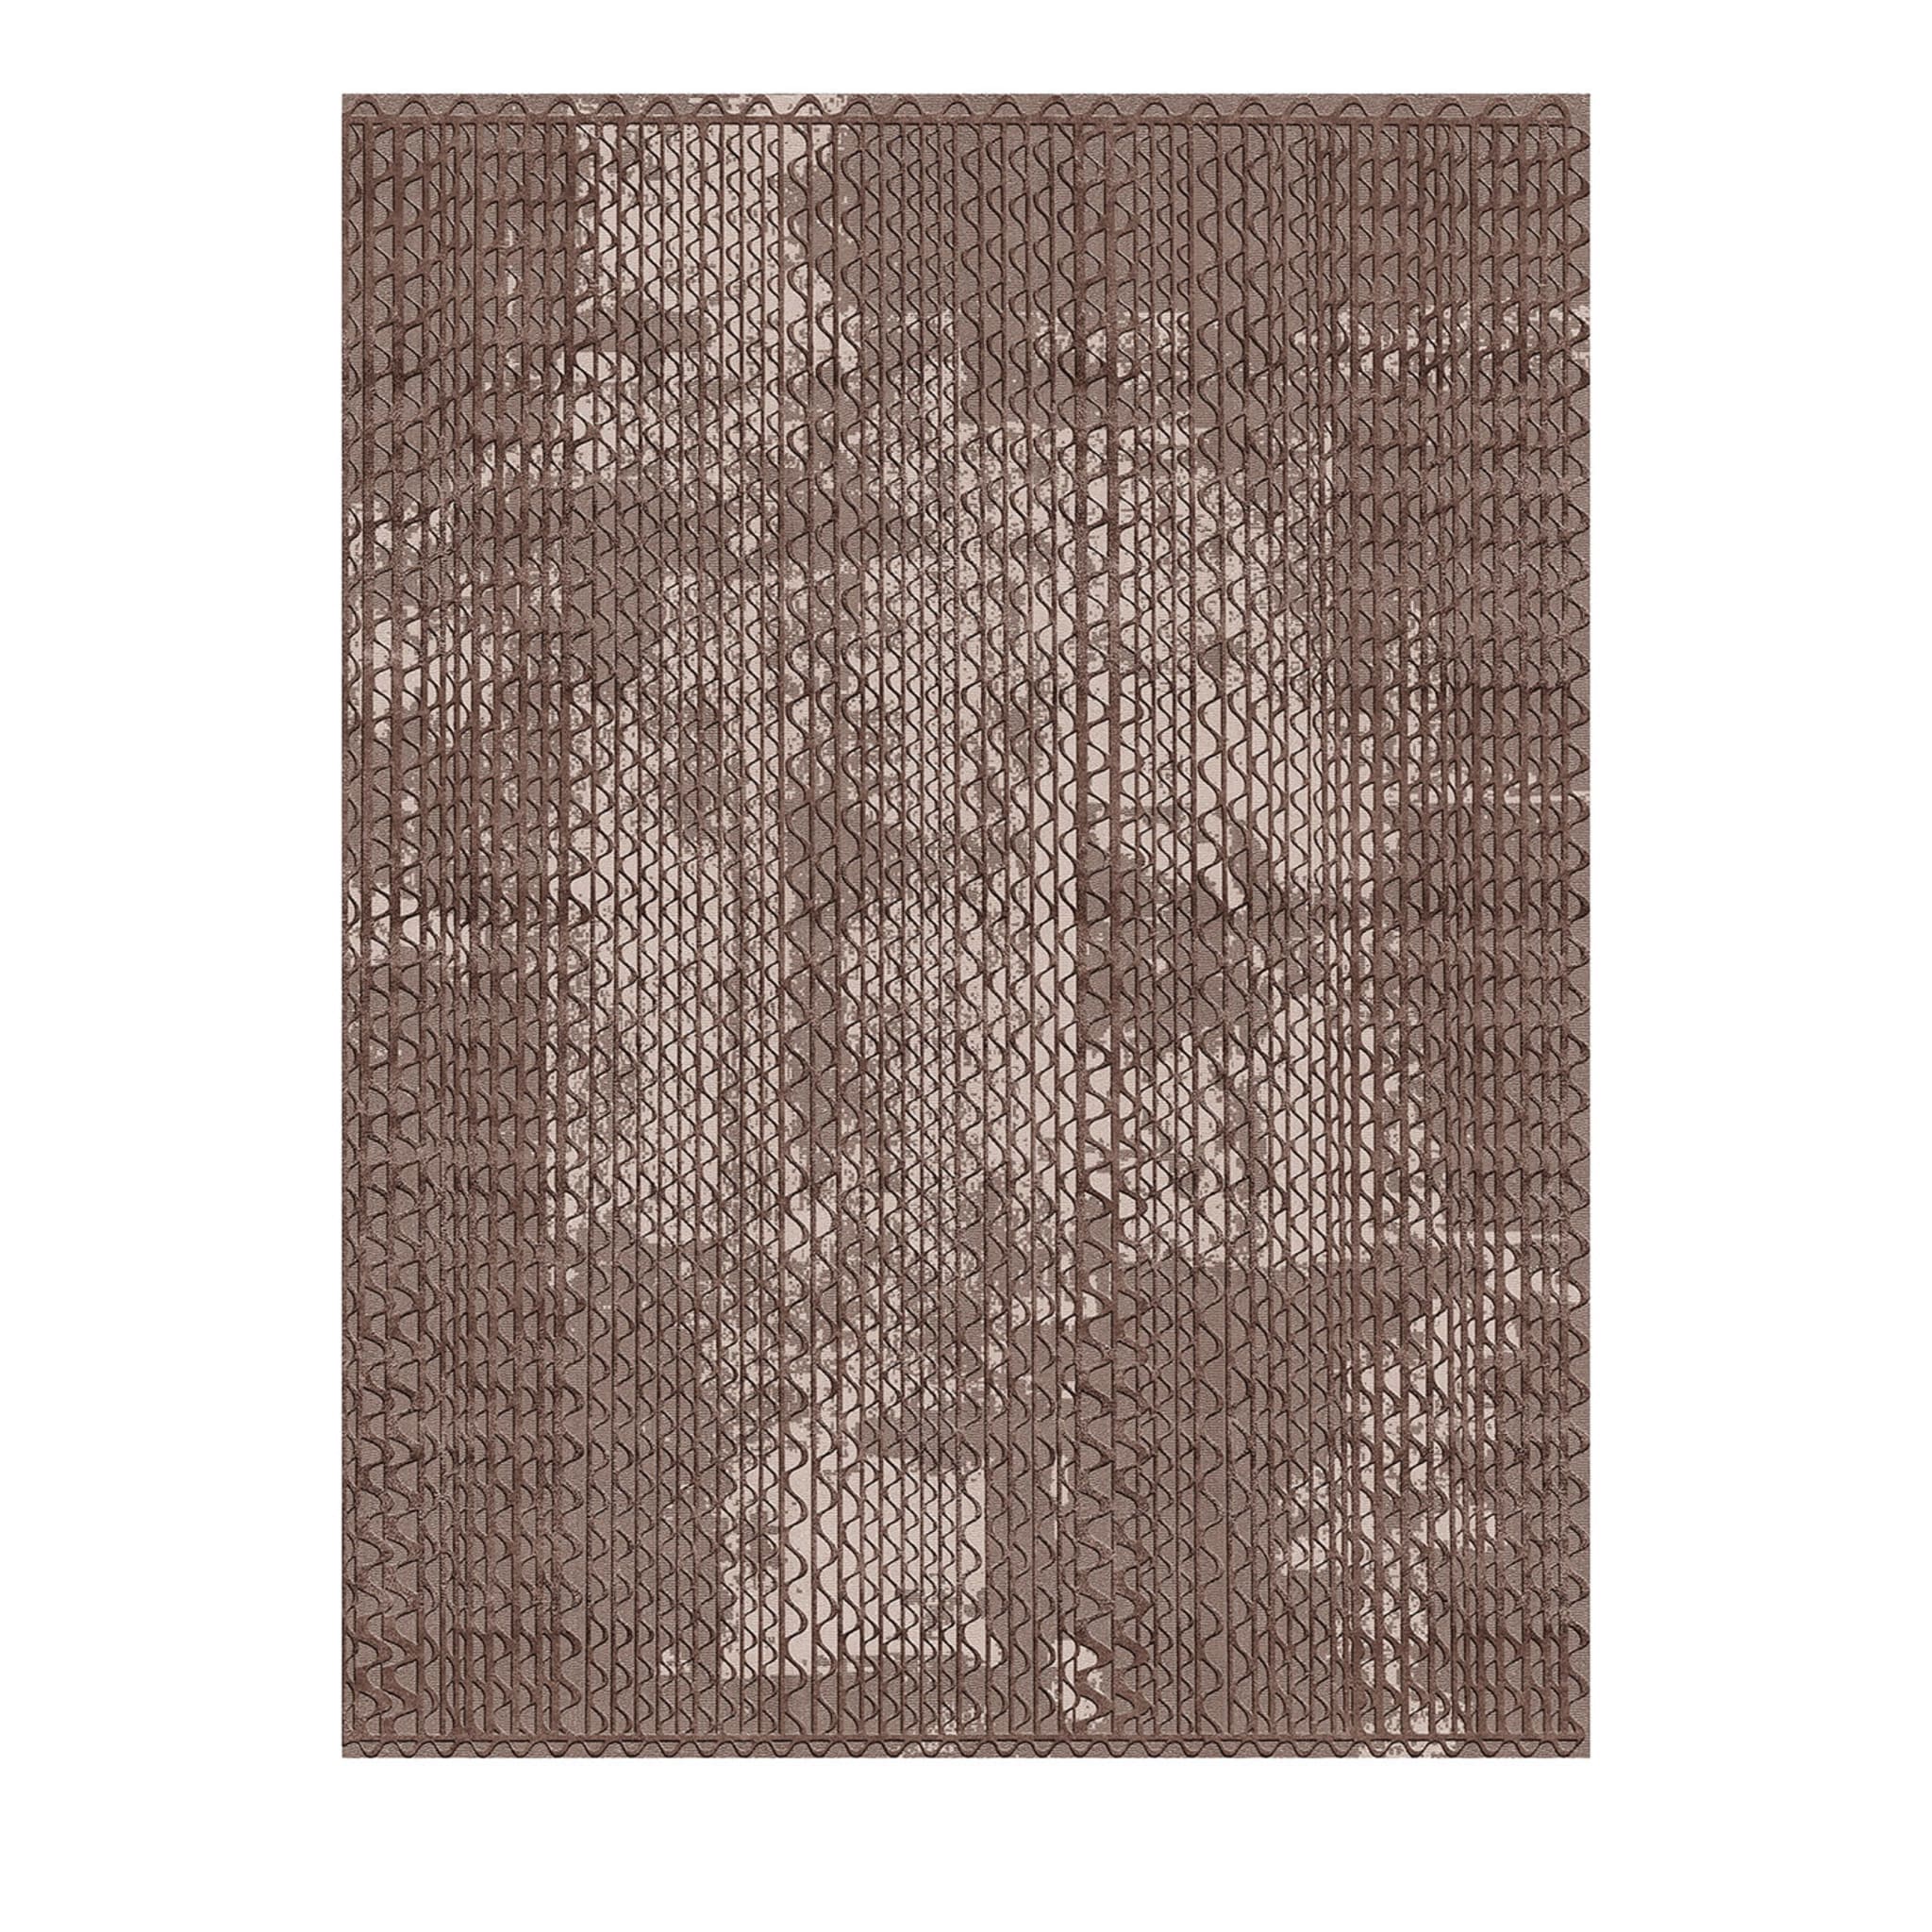 Tapis beige rectangulaire Triple Waves par Lorenza Bozzoli  - Vue principale